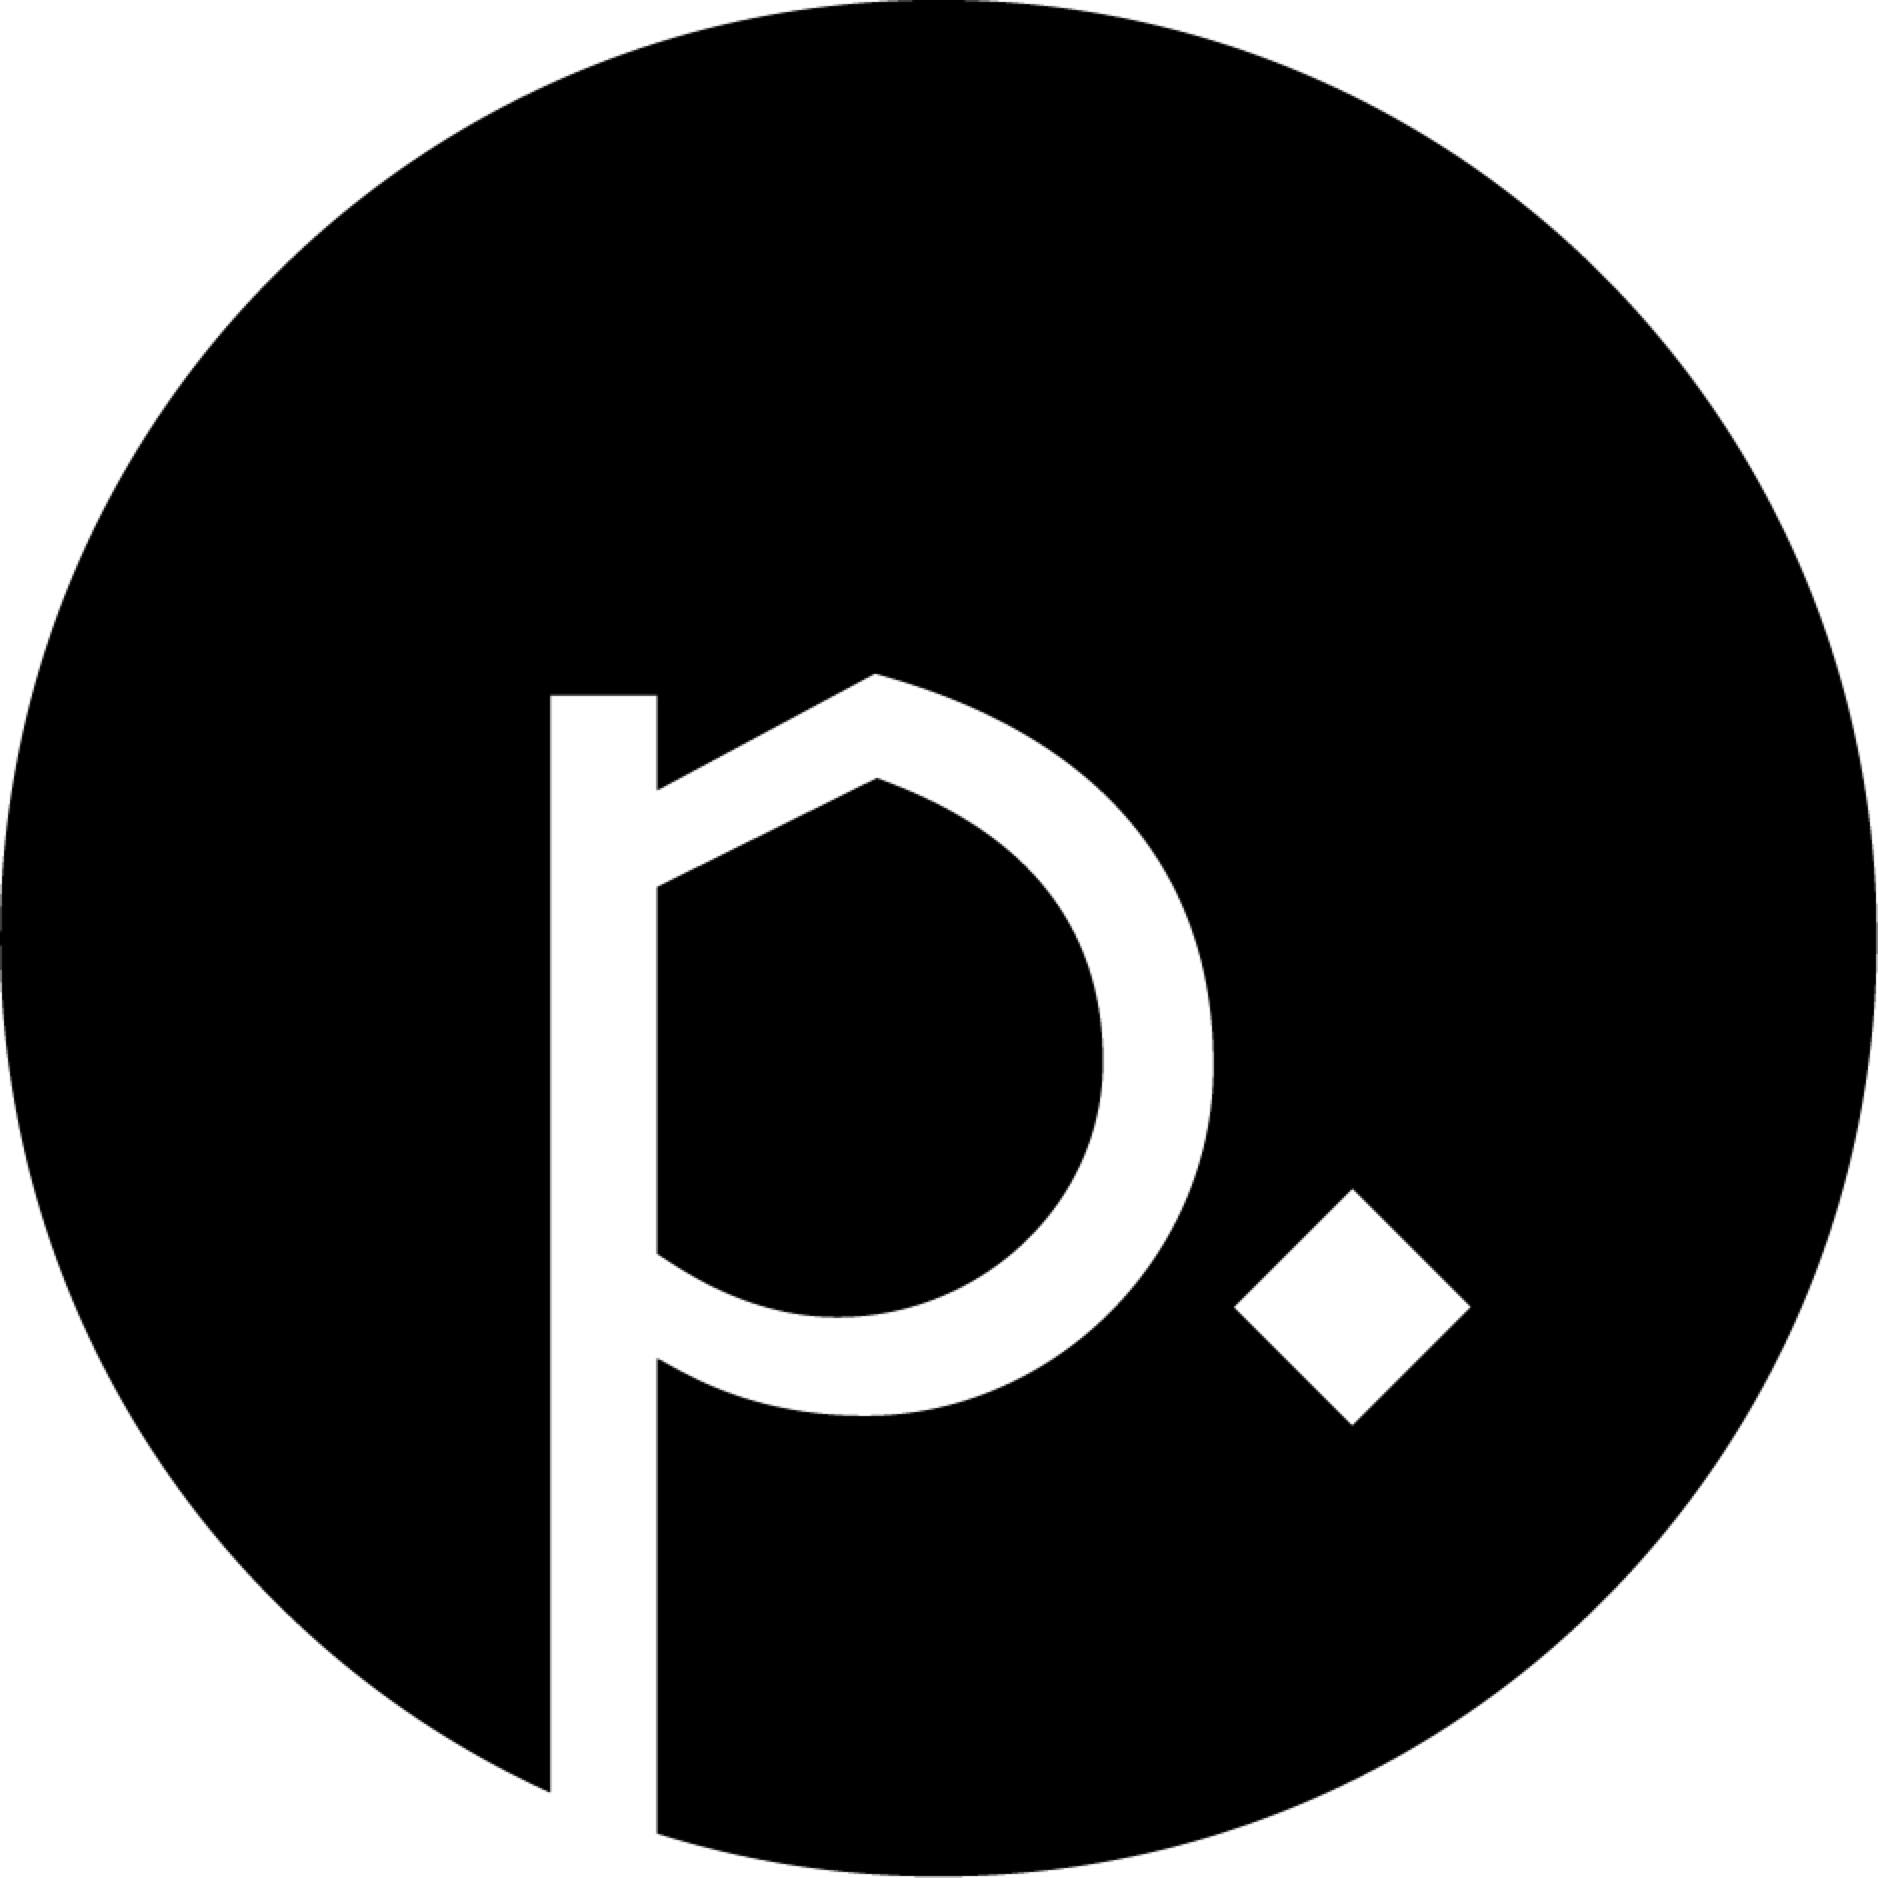 The Logo of Punctum Press